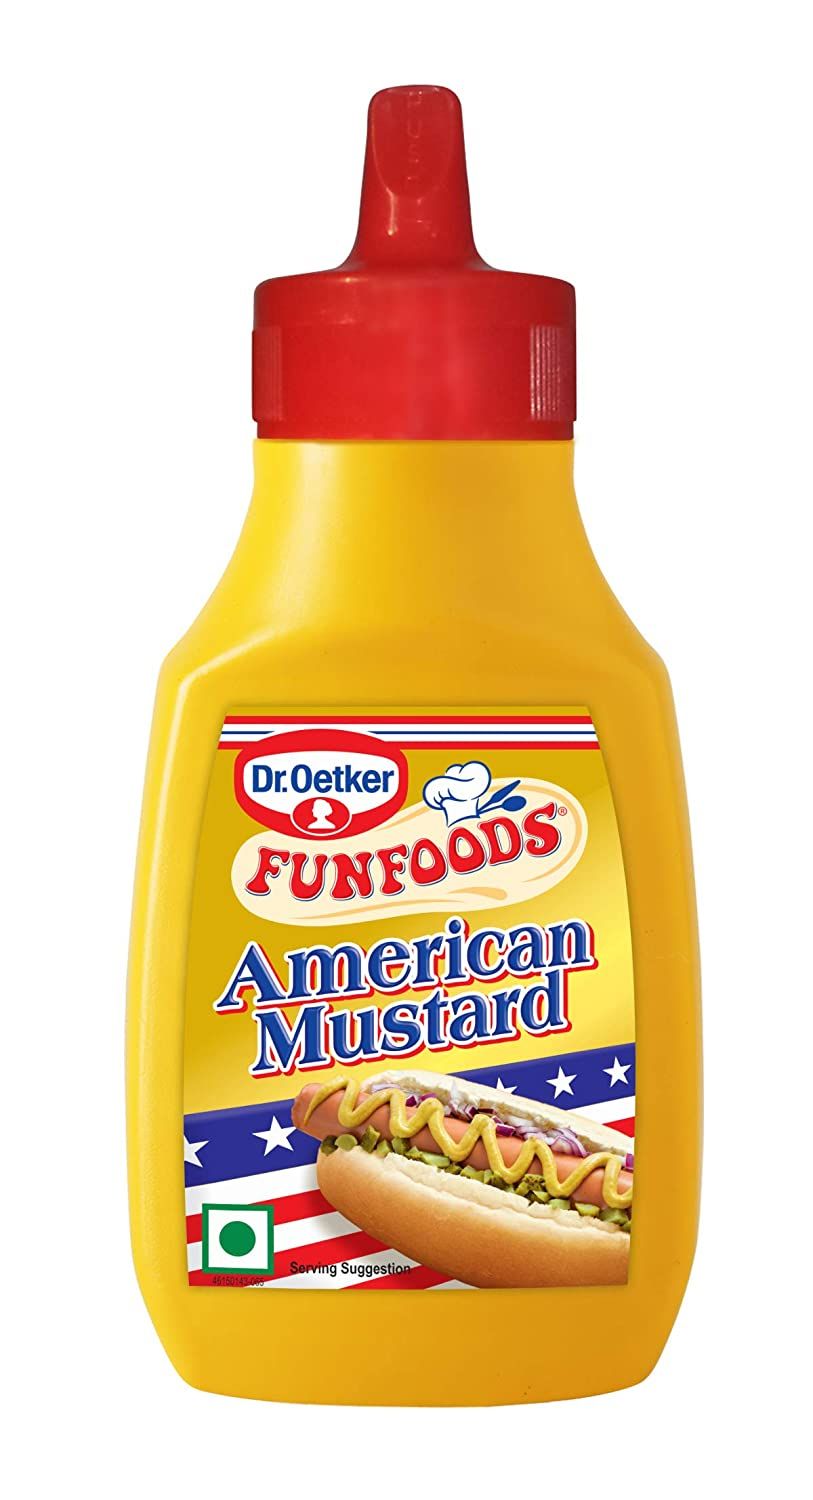 Dr Oetker American Mustard Image